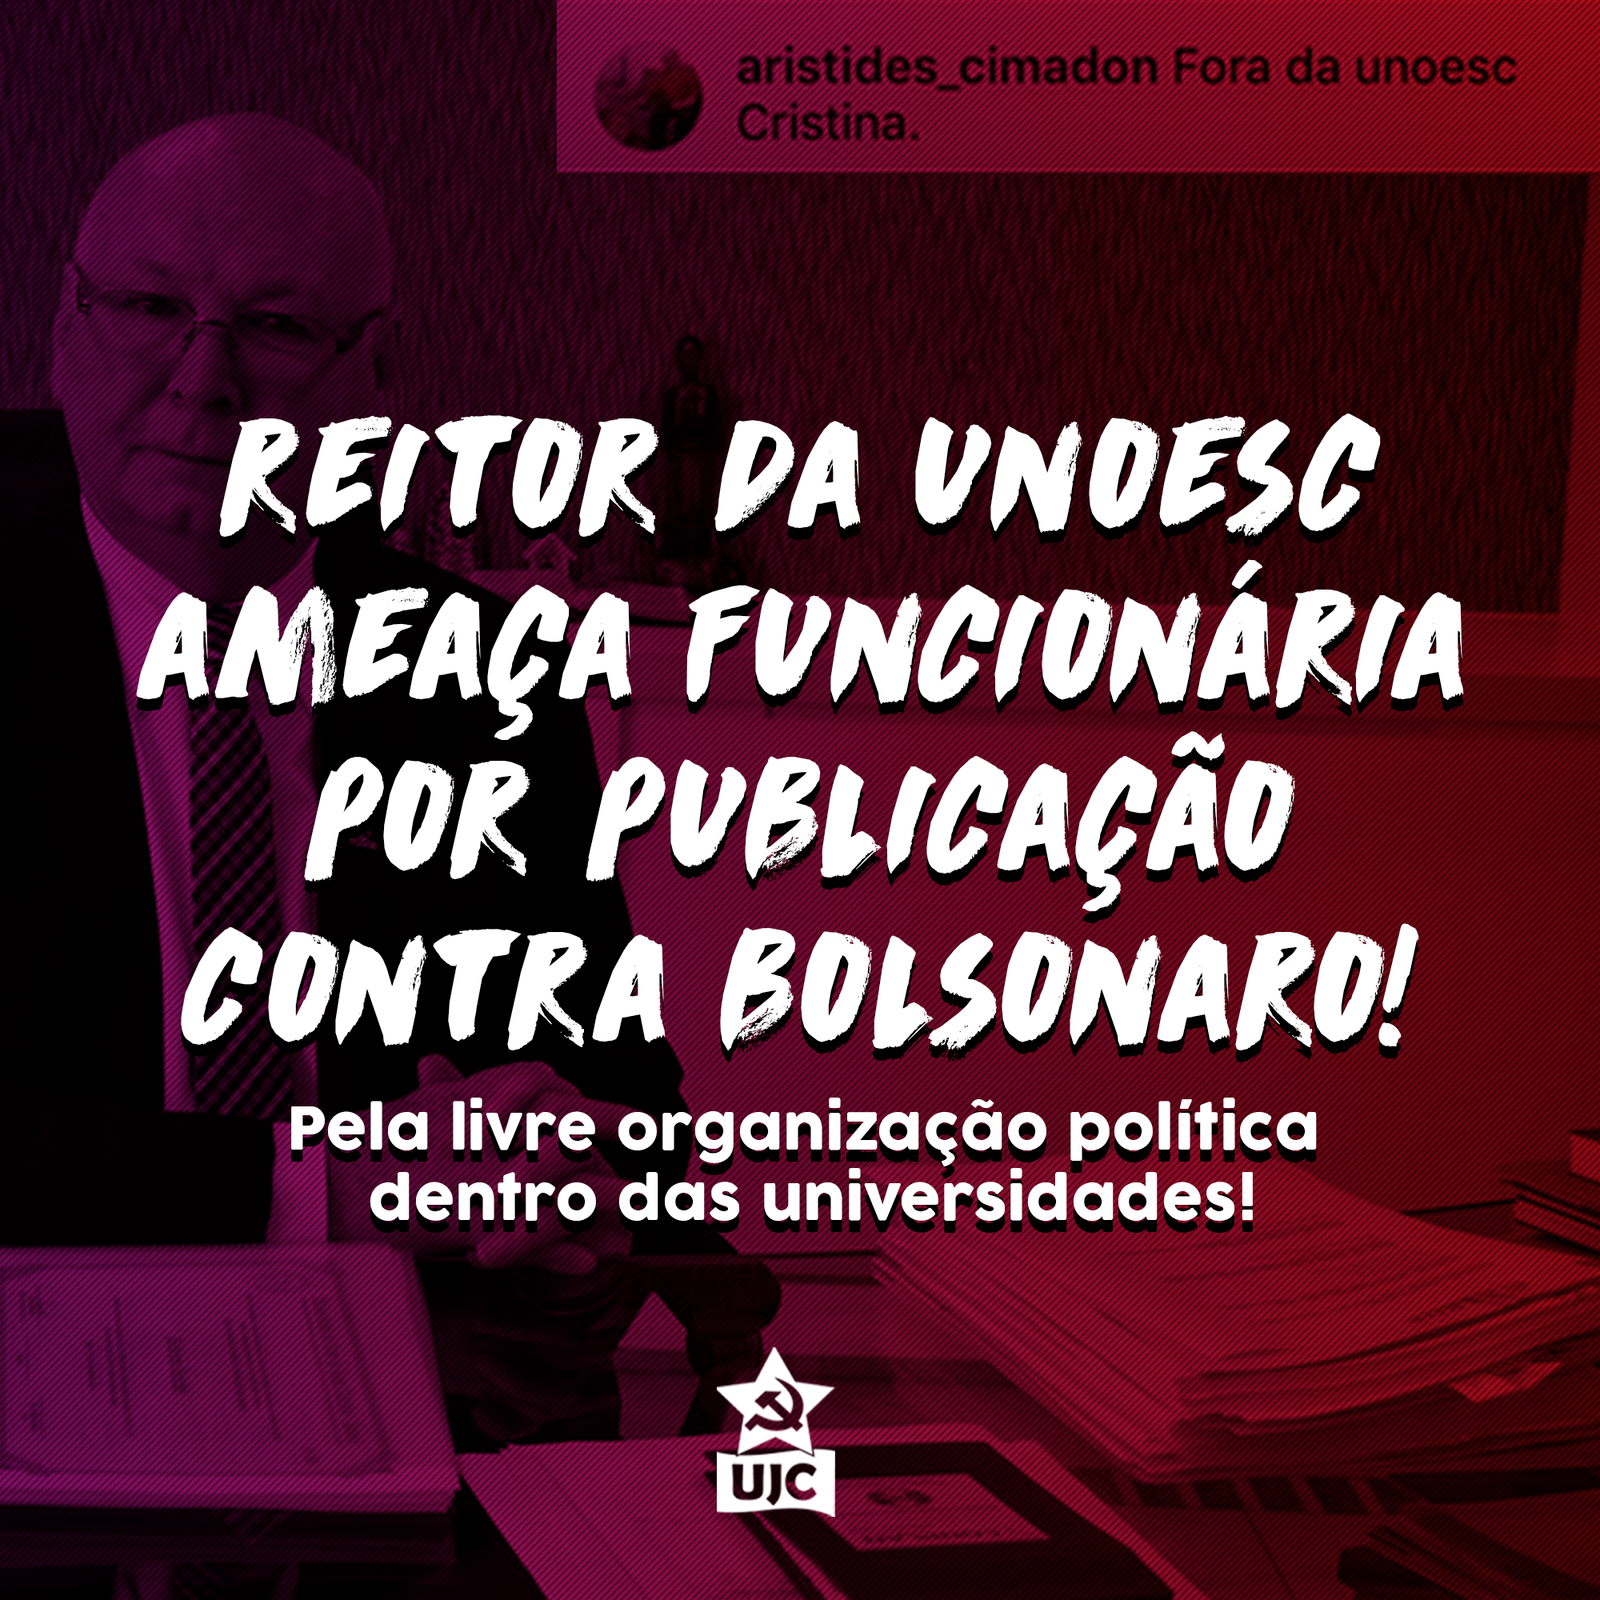 REITOR DA UNOESC AMEAÇA FUNCIONÁRIA POR PUBLICAÇÃO CONTRA BOLSONARO!